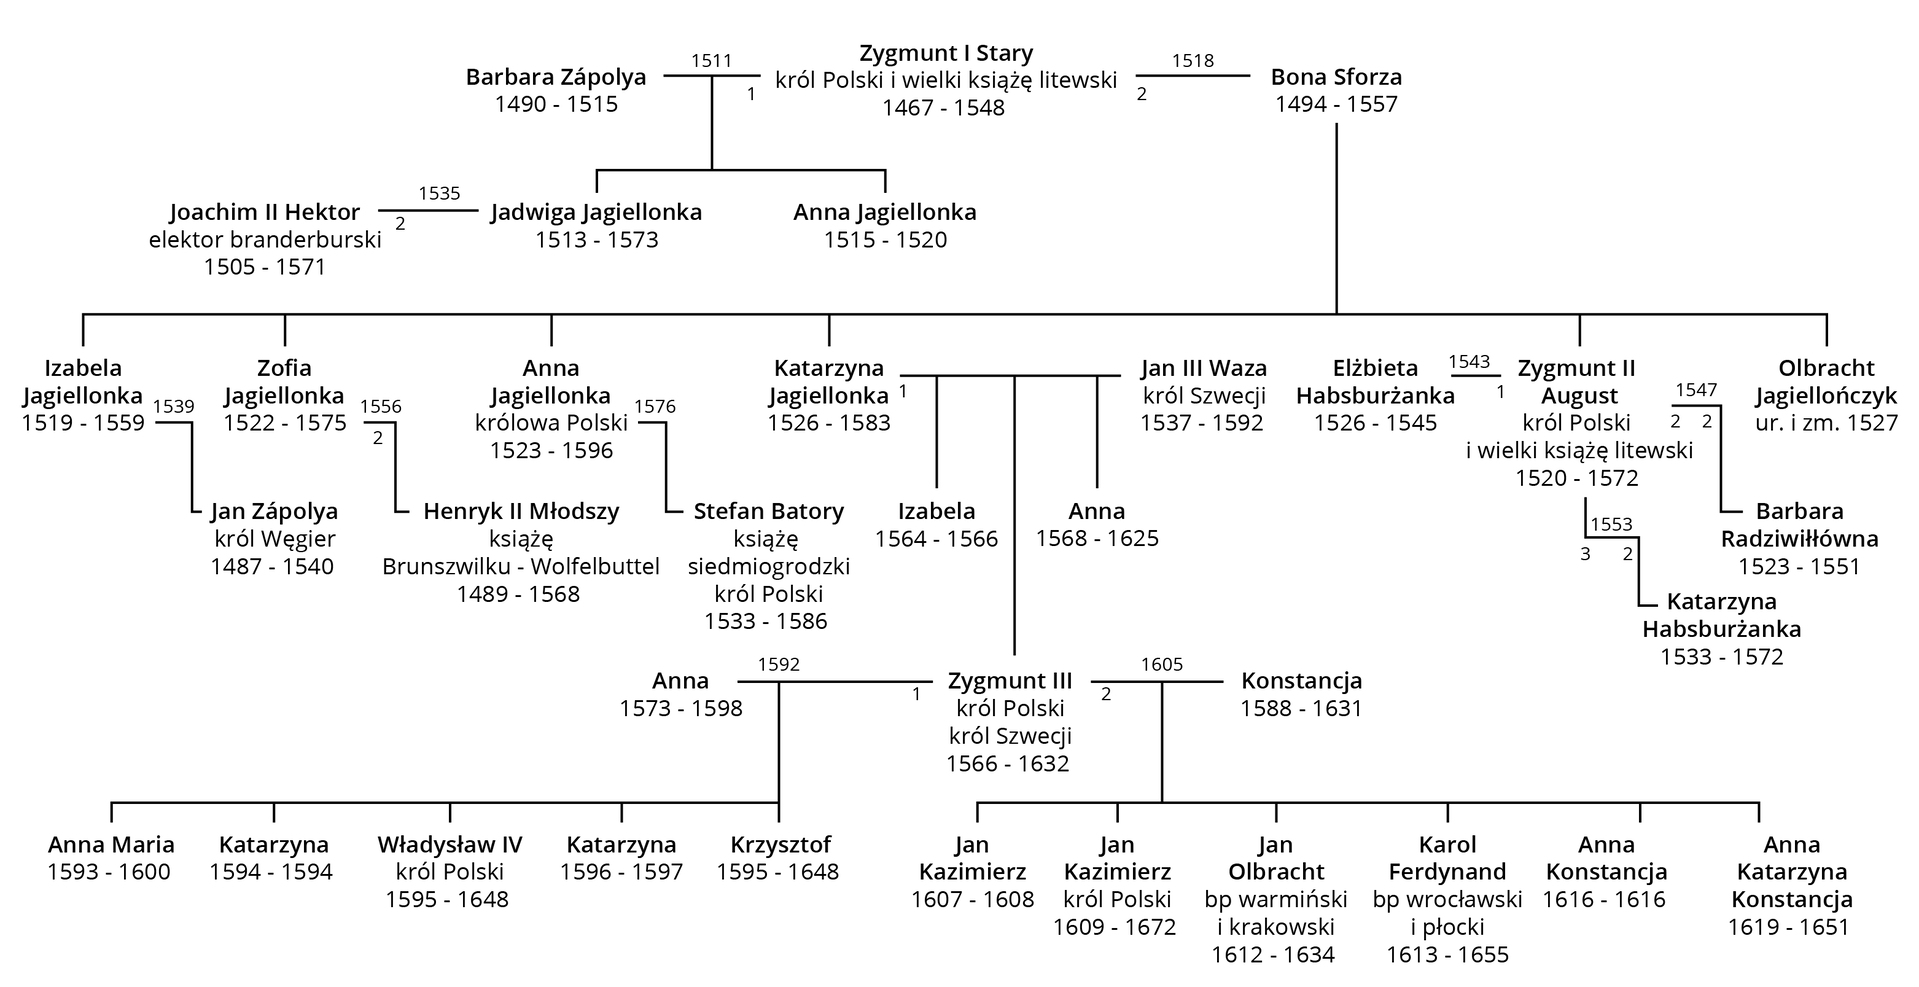 Ilustracja przedstawia drzewo genealogiczne Jagiellonów począwszy od króla Zygmunta I Starego, króla Polski i wielkiego księcia litewskiego (1467-1548) po jego prawnuki. Król Zygmunt I Stary był dwukrotnie żonaty. Jego pierwszą żoną była Barbara Zápolya (ślub w 1511 roku), z którą miał troje dzieci: Joachima II Hektora (elektora brandenburskiego), Jadwigę Jagiellonkę i Annę Jagielonkę. Ponownie ożenił się z Boną Sforzą (w 1518 roku). Z tego związku urodziło się sześcioro dzieci: 1. Izabela Jagiellonka (1519-1559), żona Jana Zápolya, króla Węgier; 2. Zofia Jagiellonka (1522-1575), żona Henryka II Młodszego, księcia Brunszwiku-Wolfbuttel; 3. Anna Jagiellonka, królowa Polski (1523-1596), żona Stefana Batorego, księcia siedmiogrodzkiego, króla Polski; 4. Katarzyna Jagiellonka (1526-1583), żona Jana III Wazy, króla Szwecji, z którym miała troje dzieci: Izabelę, Zygmunta III i Annę; 5. Zygmunta II Augusta, króla Polski i wielkiego księcia litewskiego, trzykrotnie żonatego: z Elżbietą Habsburżanką, Katarzyną Habsburżanką i Barbarą Radziwiłłówną, bezdzietnego; 6. Olbrachta Jagiellończyka, urodzonego i zmarłego w 1527 roku. Wspomniany już wnuk Zygmunta I Starego, syn jego córki Katarzyny Jagiellonki i Jana III Wazy, Zygmunt III był królem Polski i królem Szwecji (1566-1632). Był on dwukrotnie żonaty. Pierwsza żona to Anna, z którą miał pięcioro dzieci: Annę Marię, Katarzynę, Władysława IV (króla Polski, 1595-1648), Katarzynę i Krzysztofa. Druga żona to Konstancja, z którą miał sześcioro dzieci: Jana Kazimierza (żył tylko rok), Jana Kazimierza, króla Polski (1609-1672), Jana Olbrachta, biskupa warmińskiego i krakowskiego, Karola Ferdynanda, biskupa płockiego i wrocławskiego, Annę Konstancję, Annę Katarzynę Konstancję.